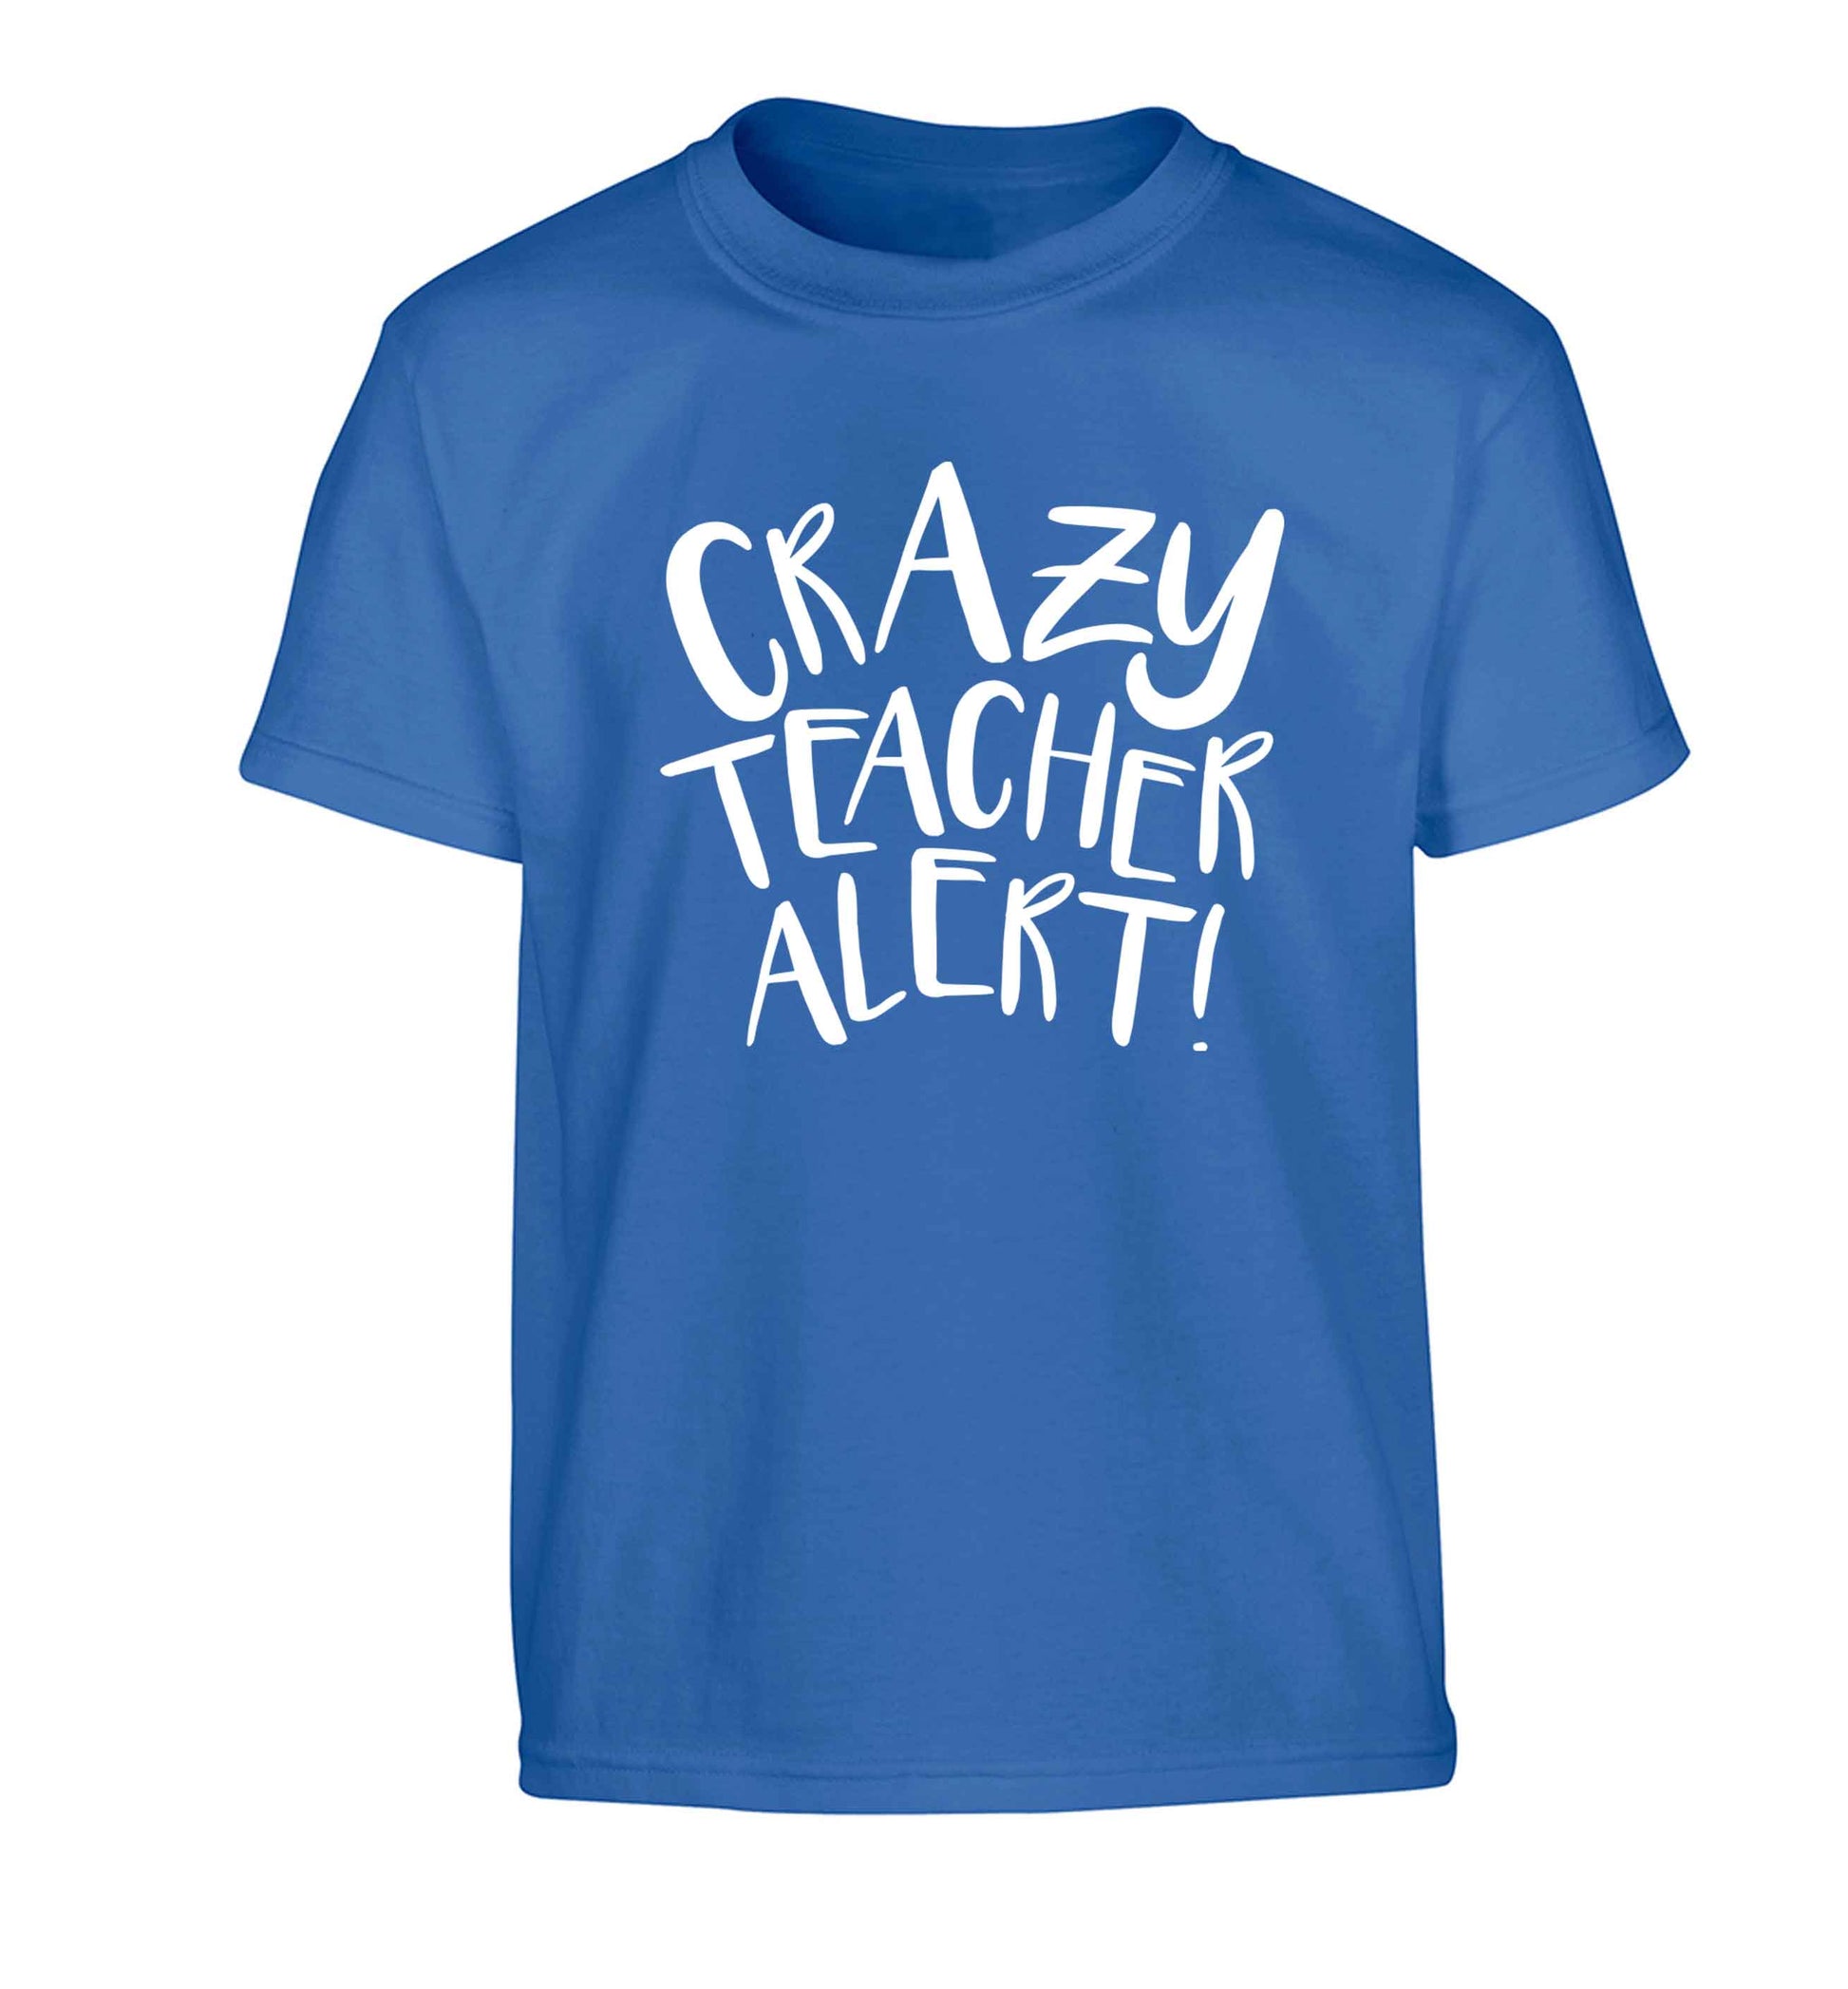 Crazy teacher alert Children's blue Tshirt 12-13 Years